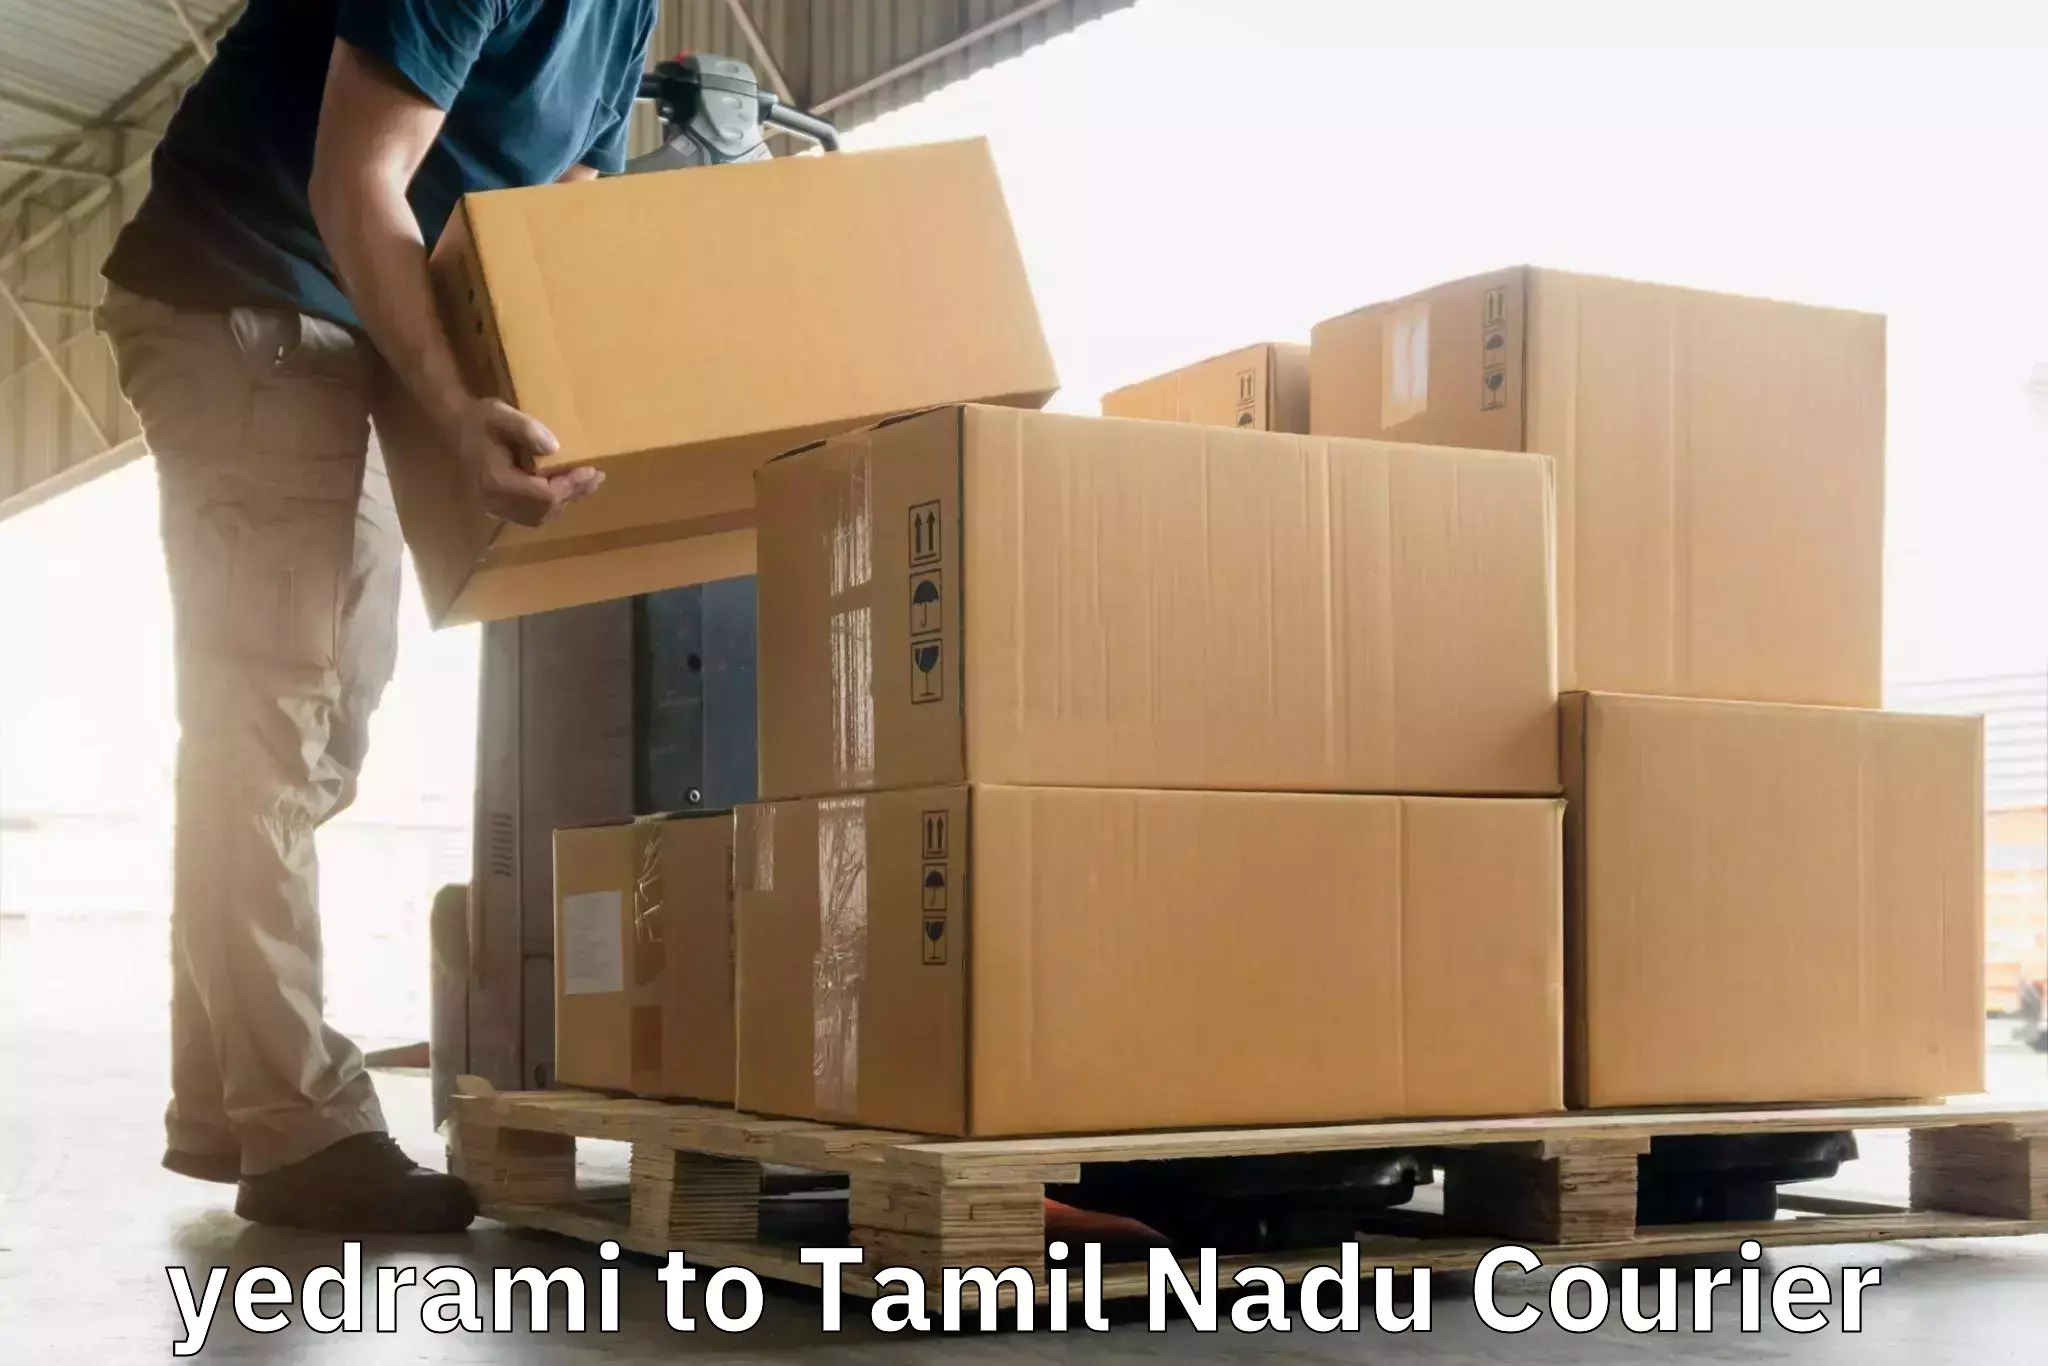 24-hour courier services yedrami to Bharathidasan University Tiruchirappalli